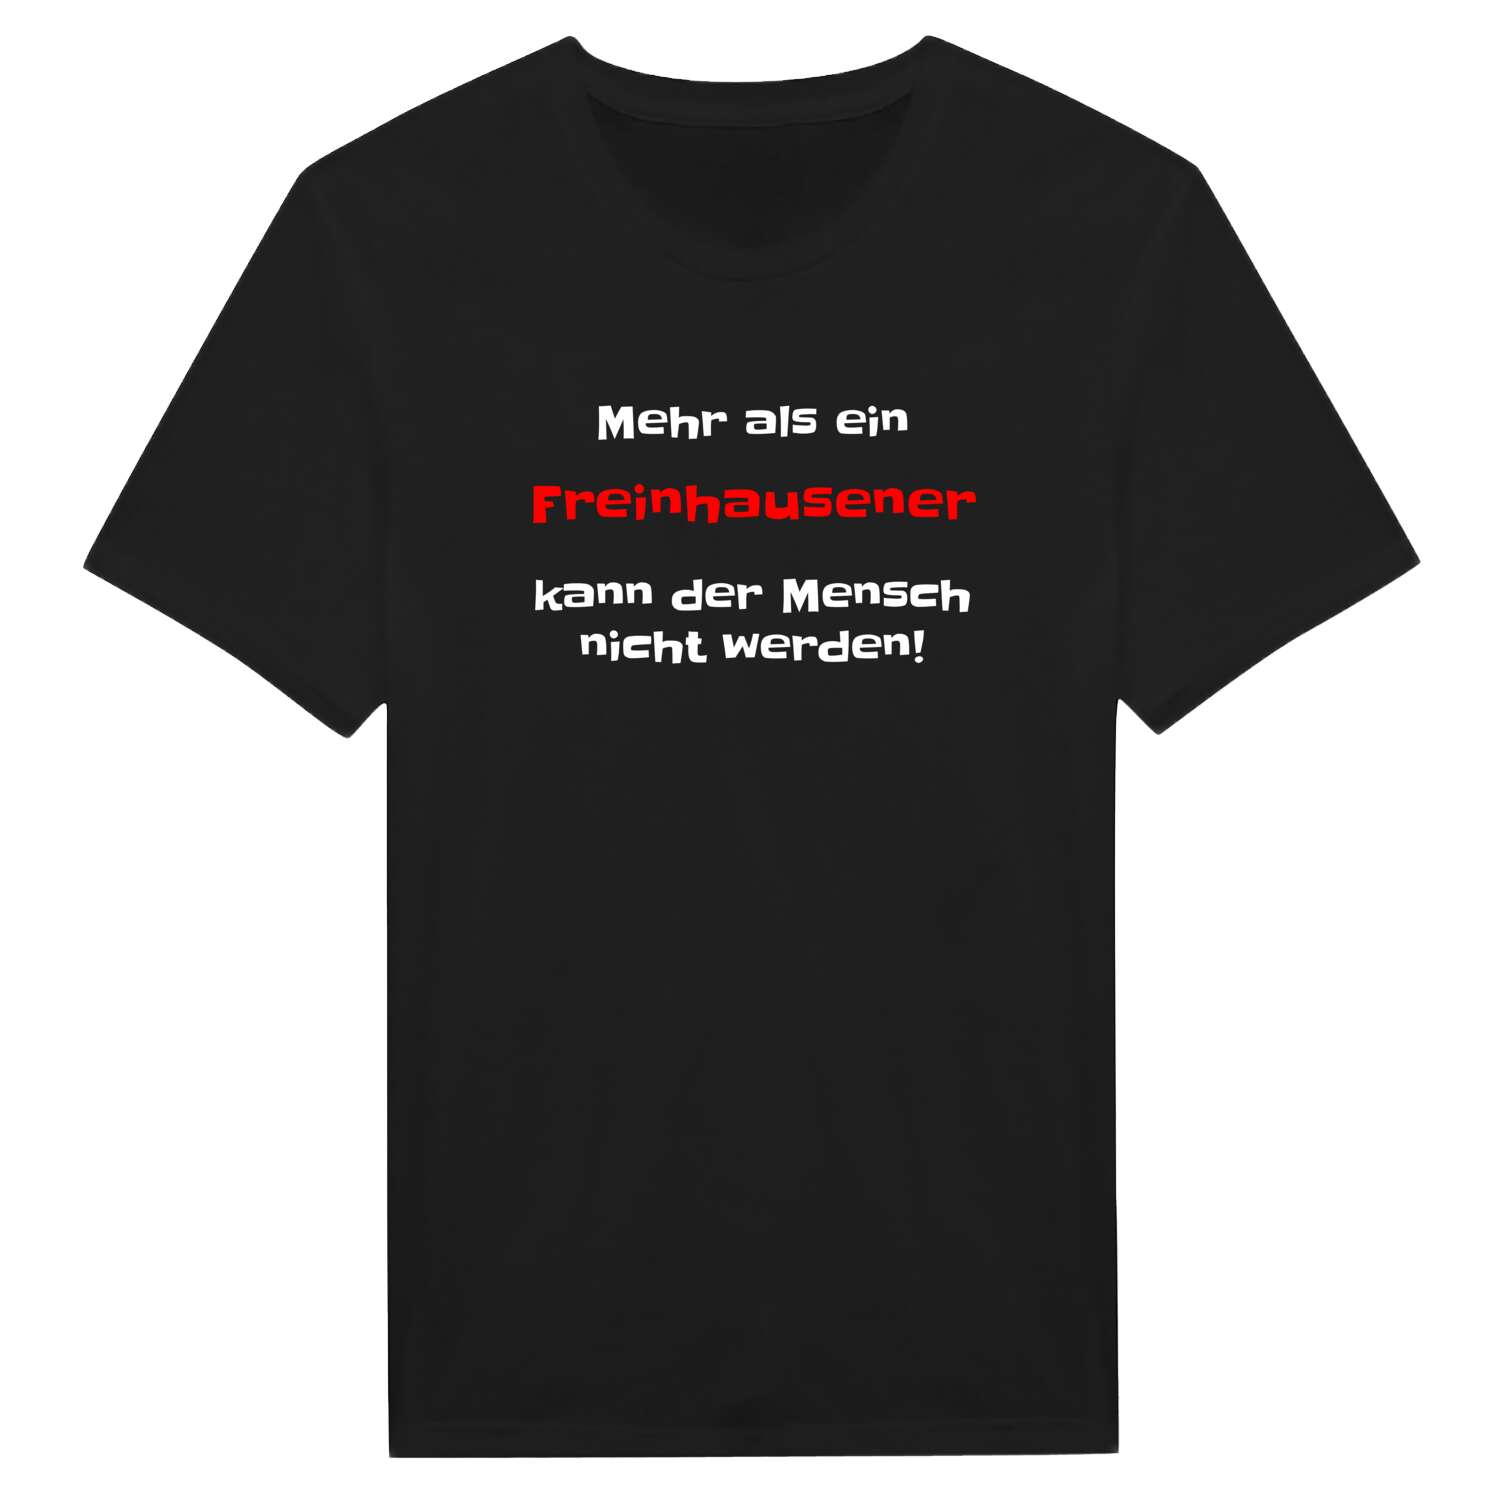 Freinhausen T-Shirt »Mehr als ein«